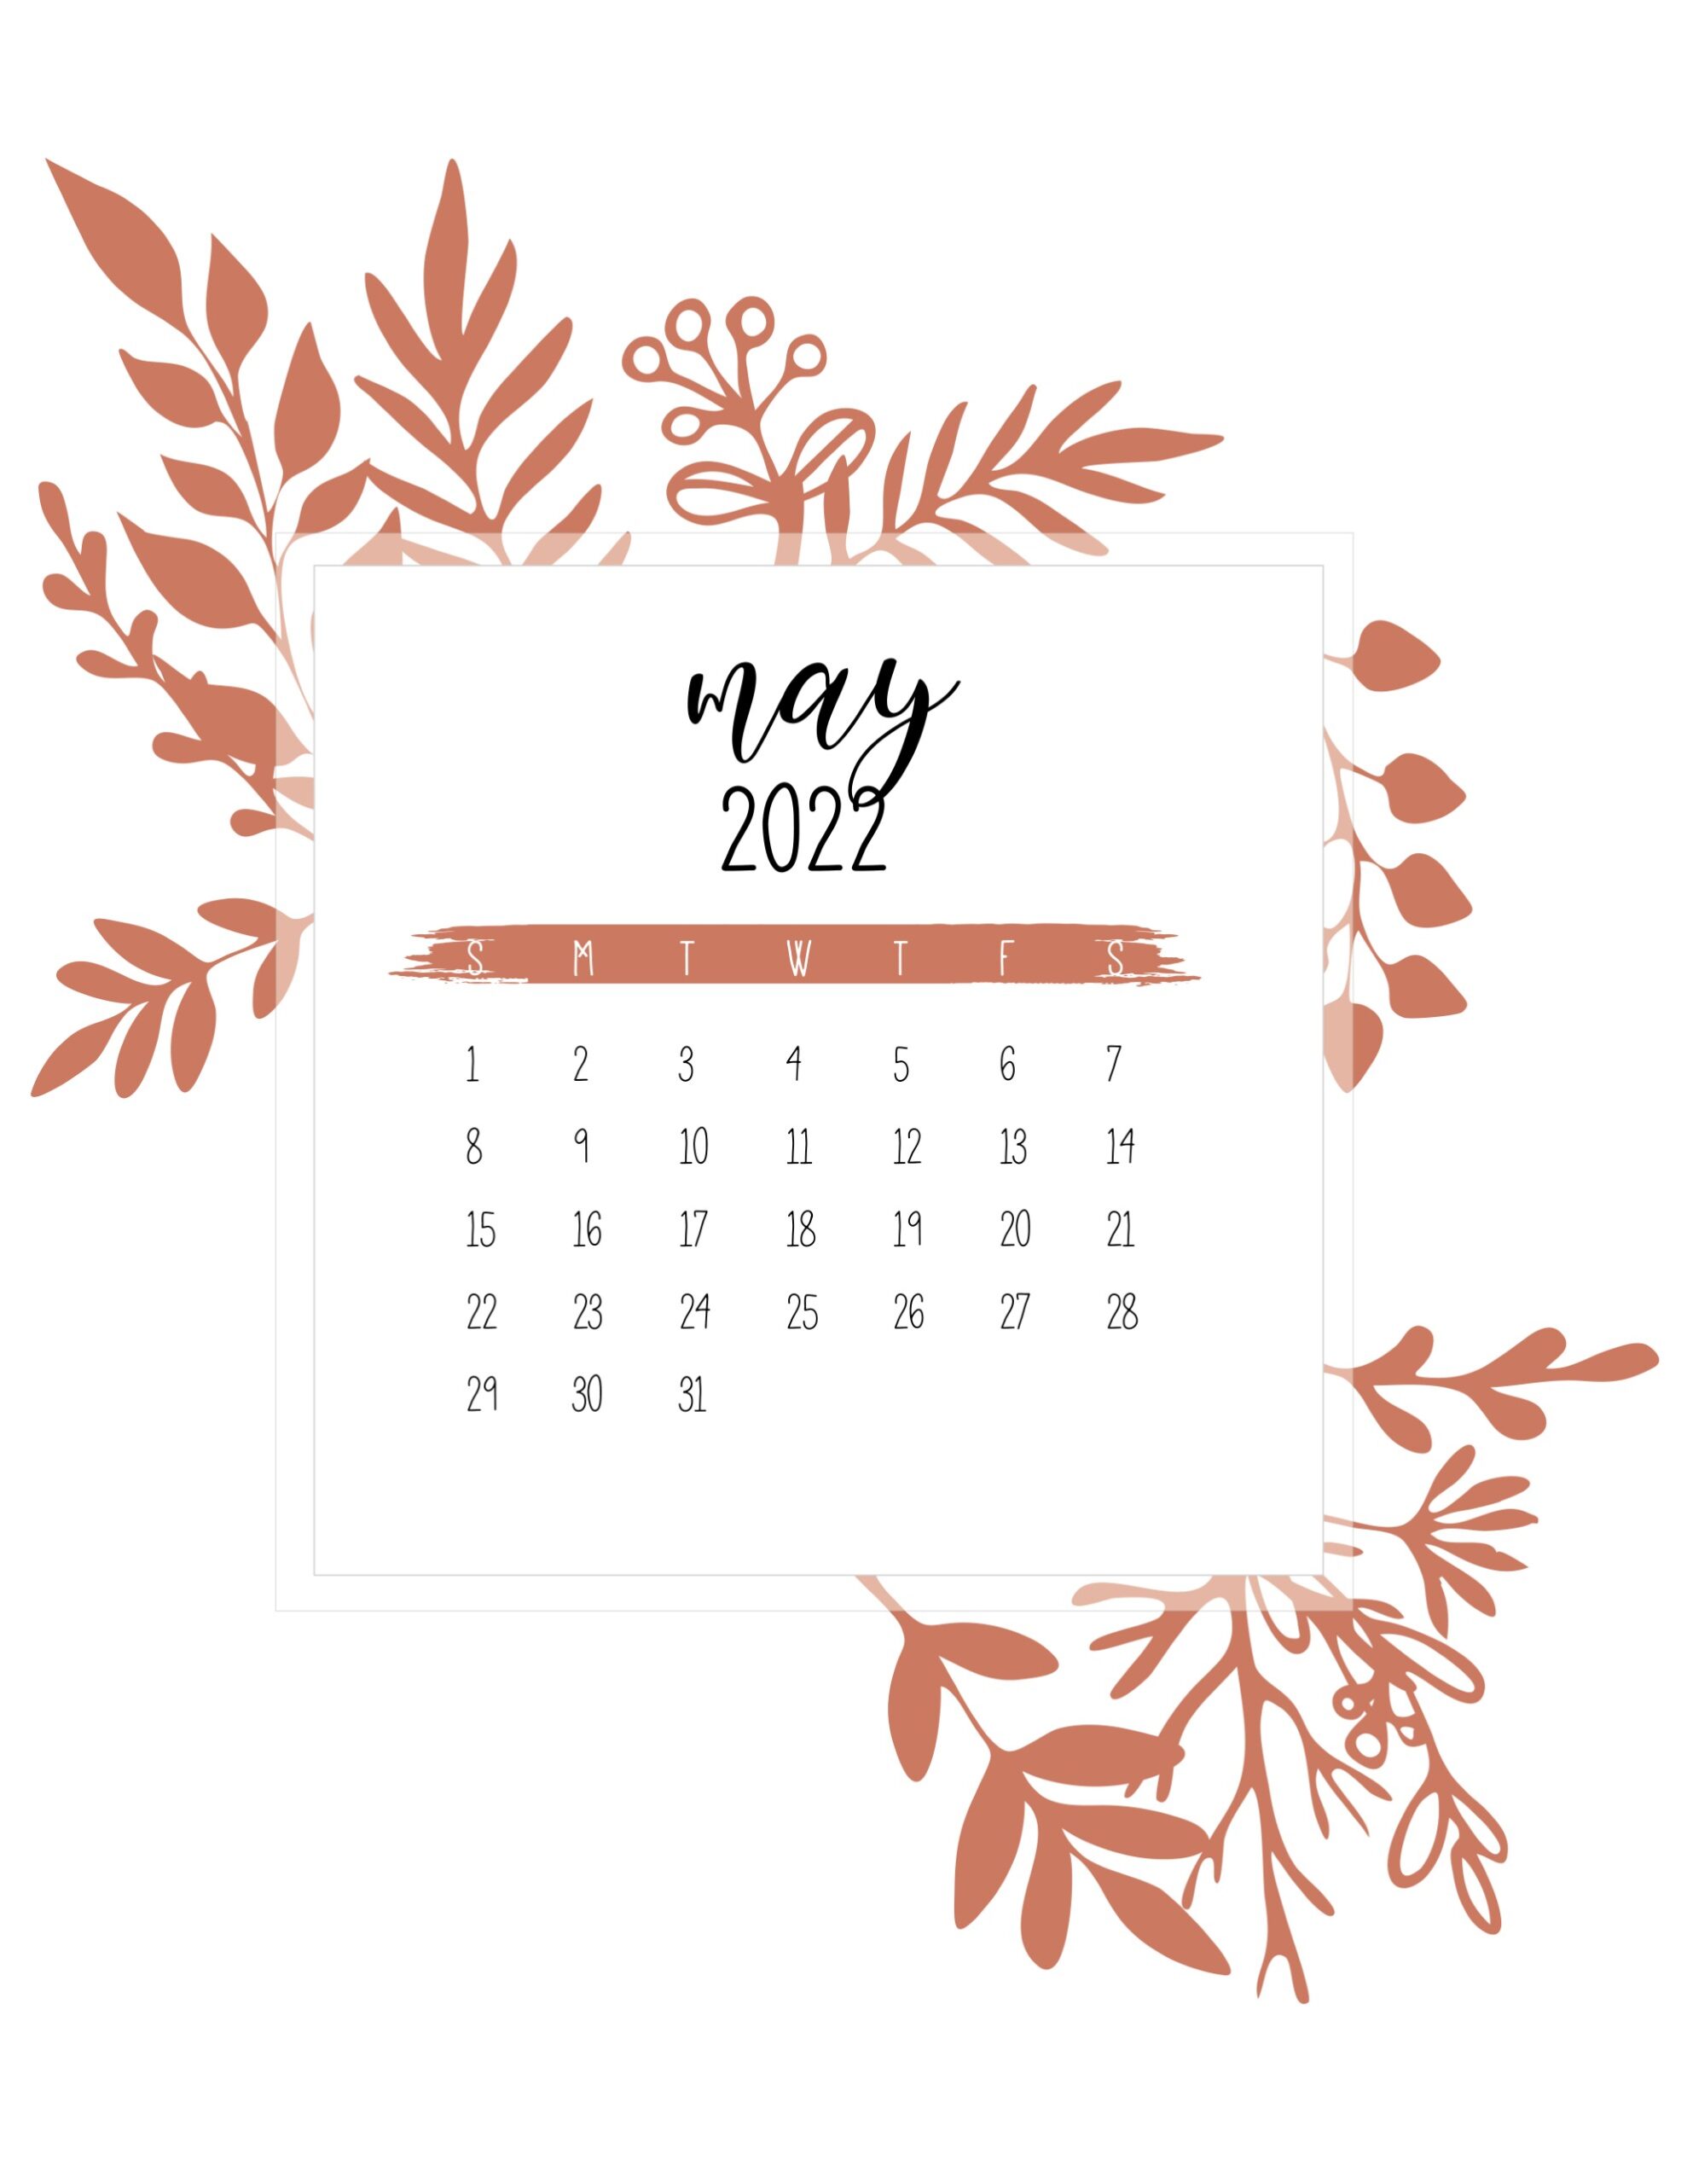 May 2022 Calendar Wallpaper Free Printable May 2022 Calendars - World Of Printables